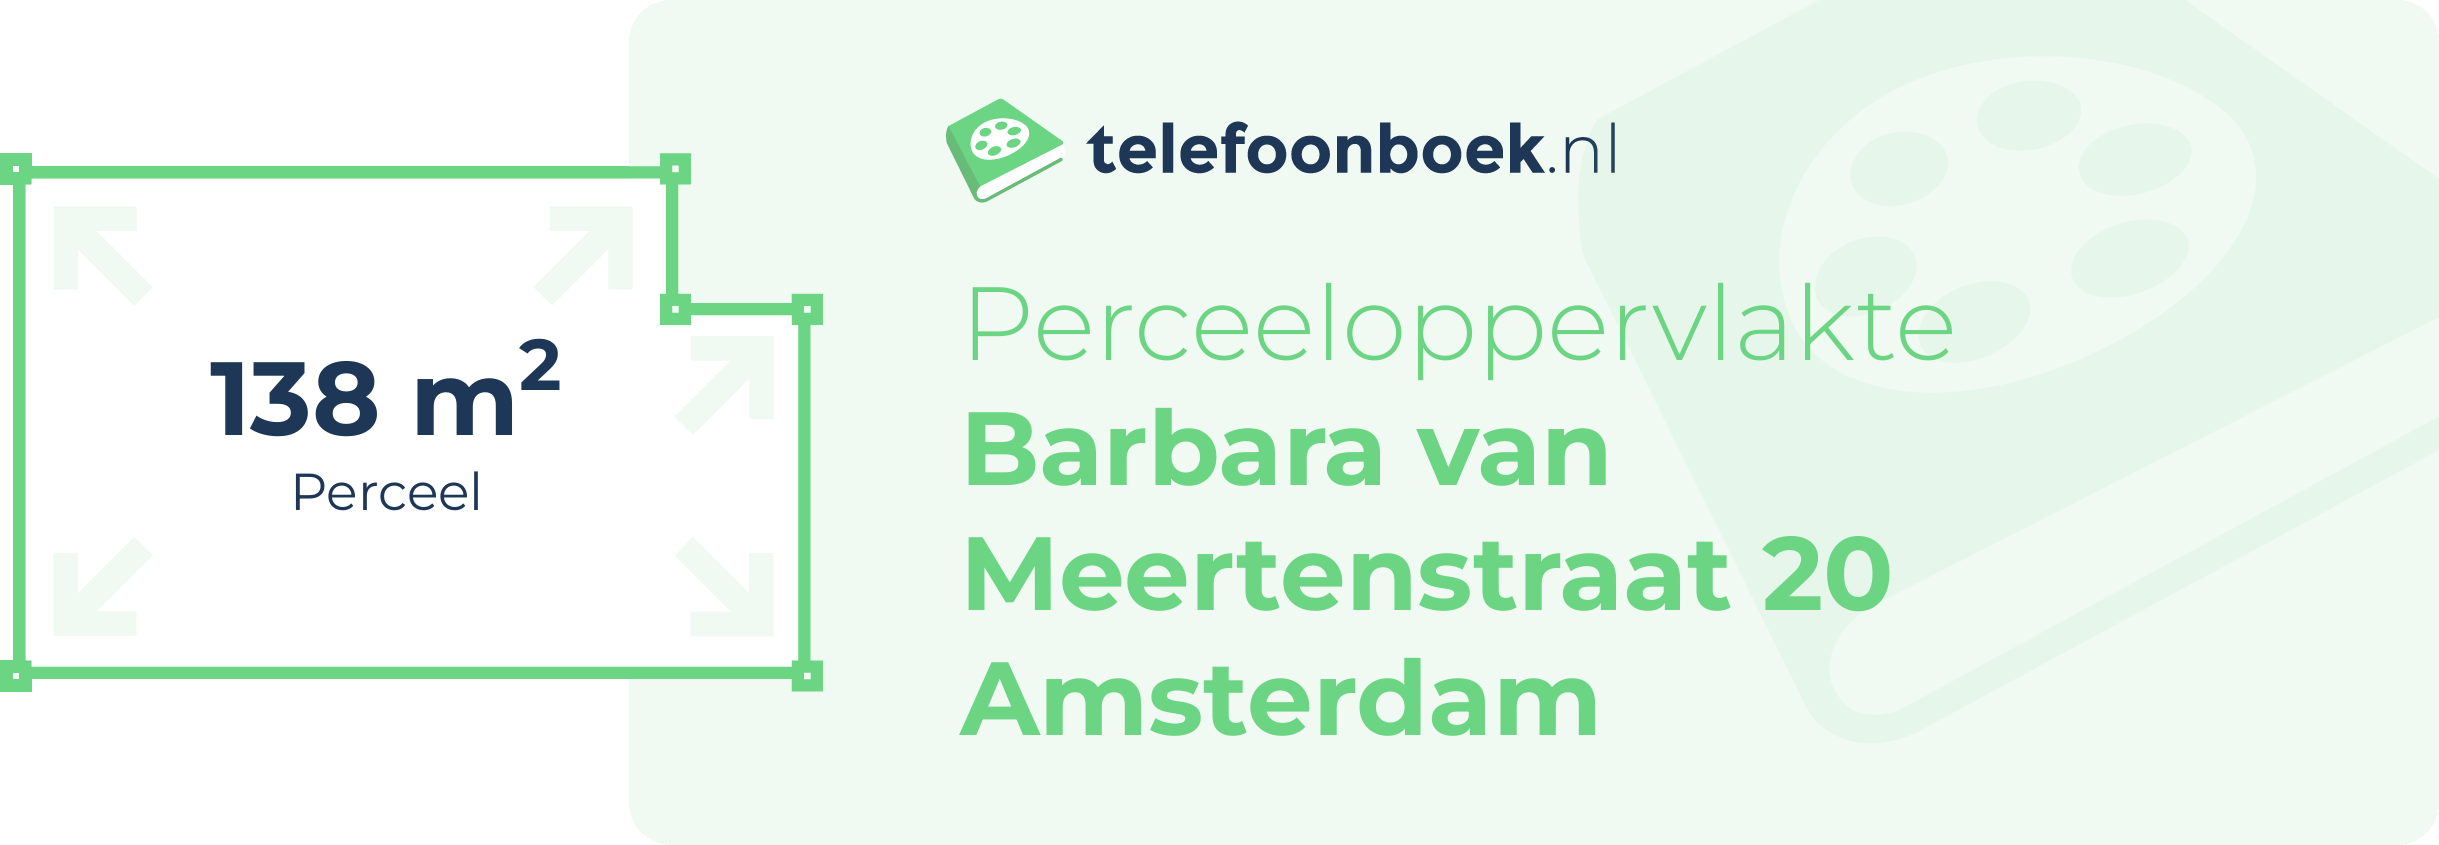 Perceeloppervlakte Barbara Van Meertenstraat 20 Amsterdam